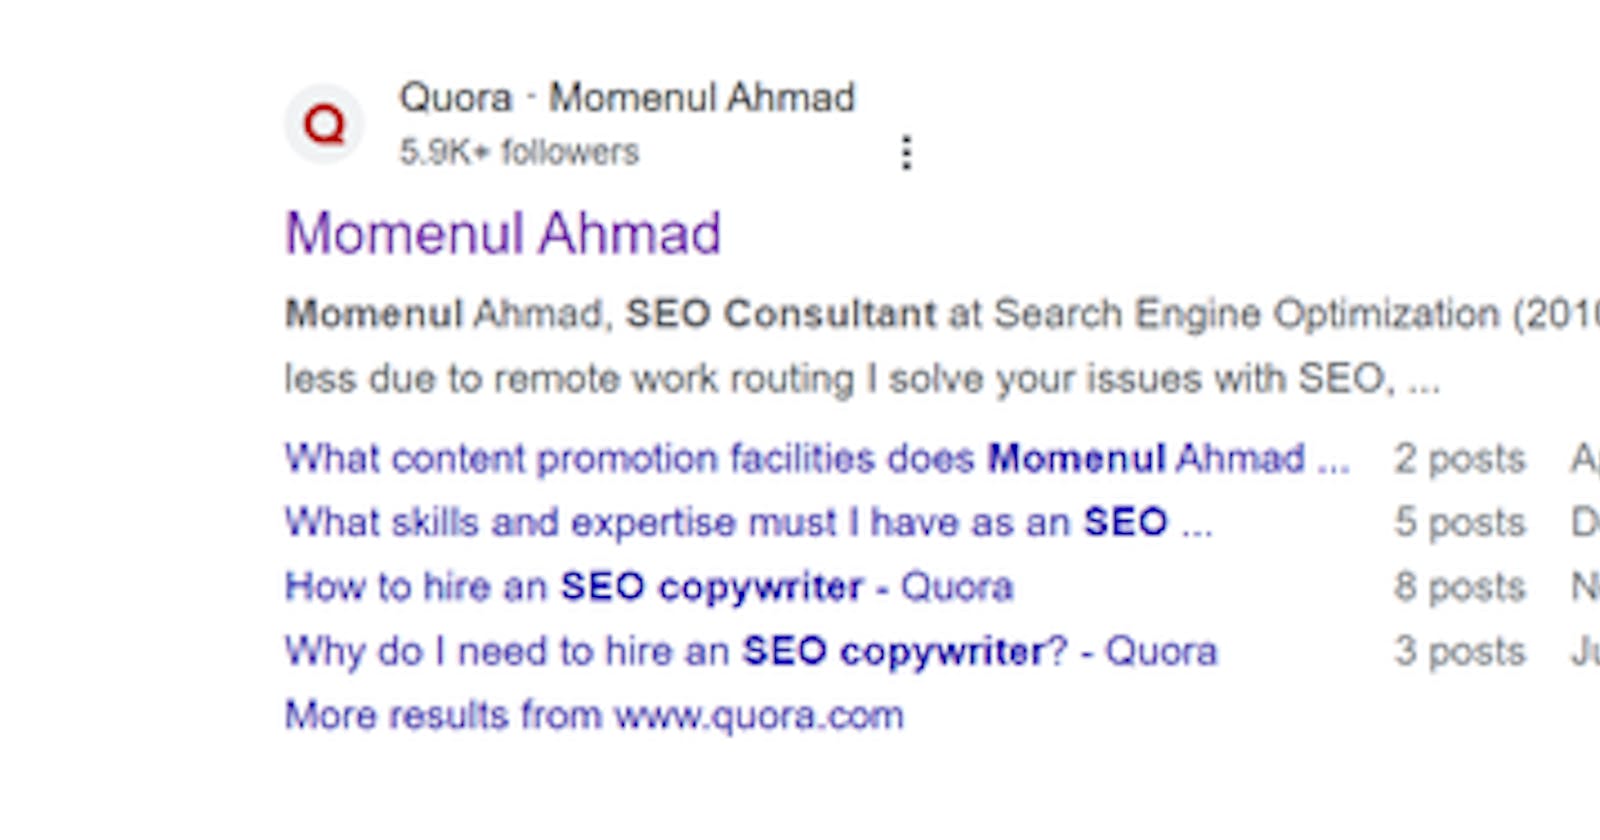 Momenul Ahmad On Quora, Who Is Momenul Ahmad?